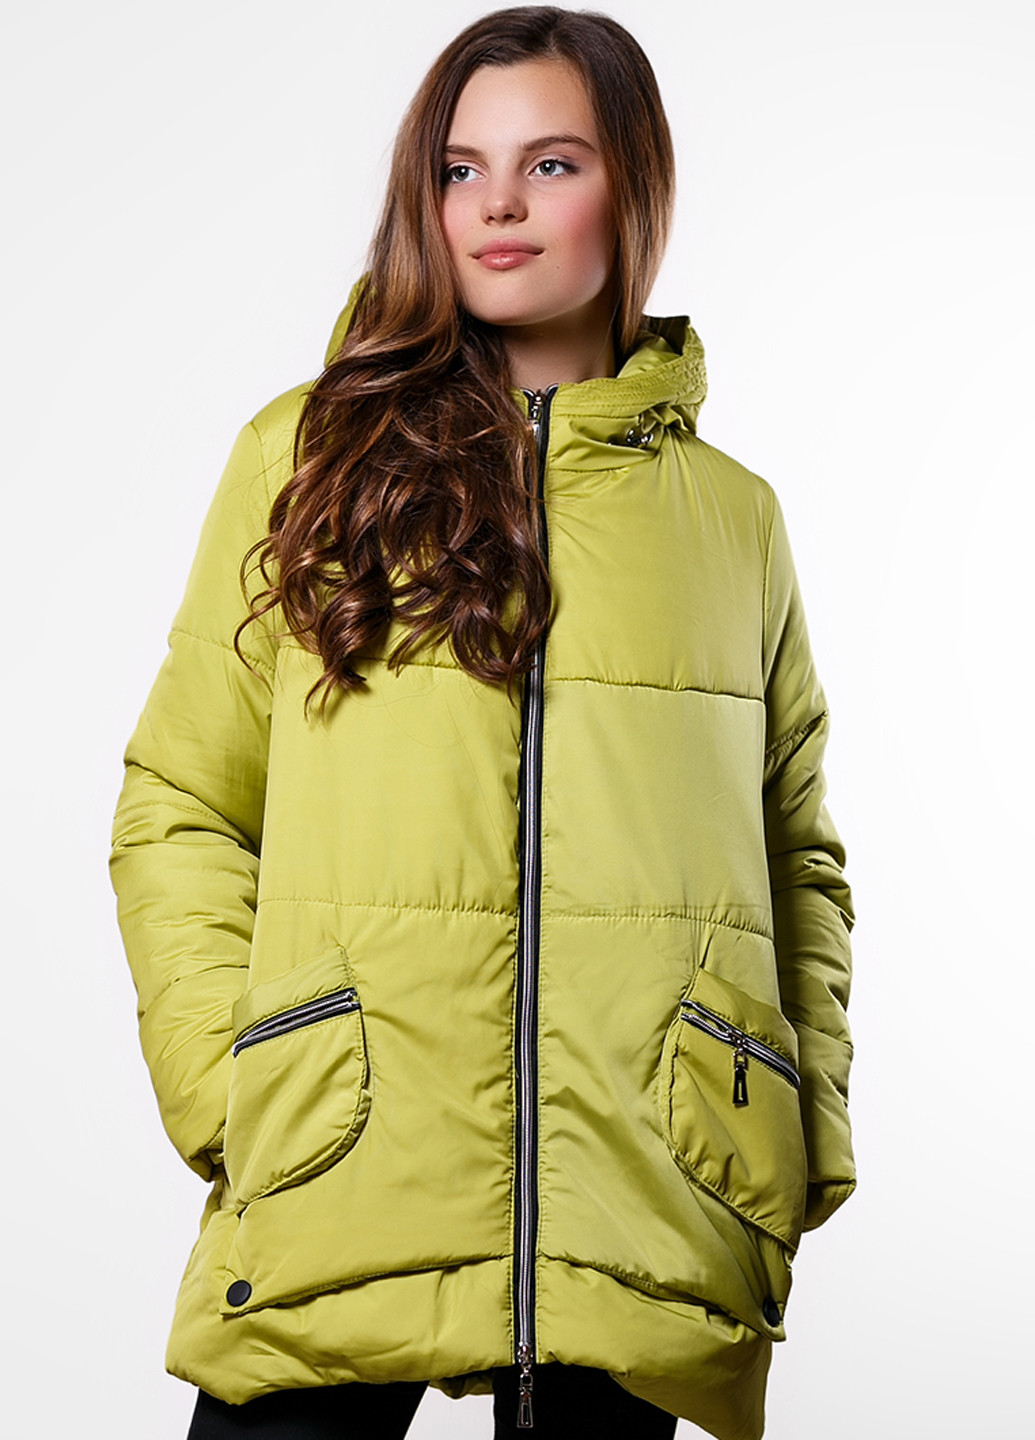 Лимонно-зеленая зимняя куртка SFN